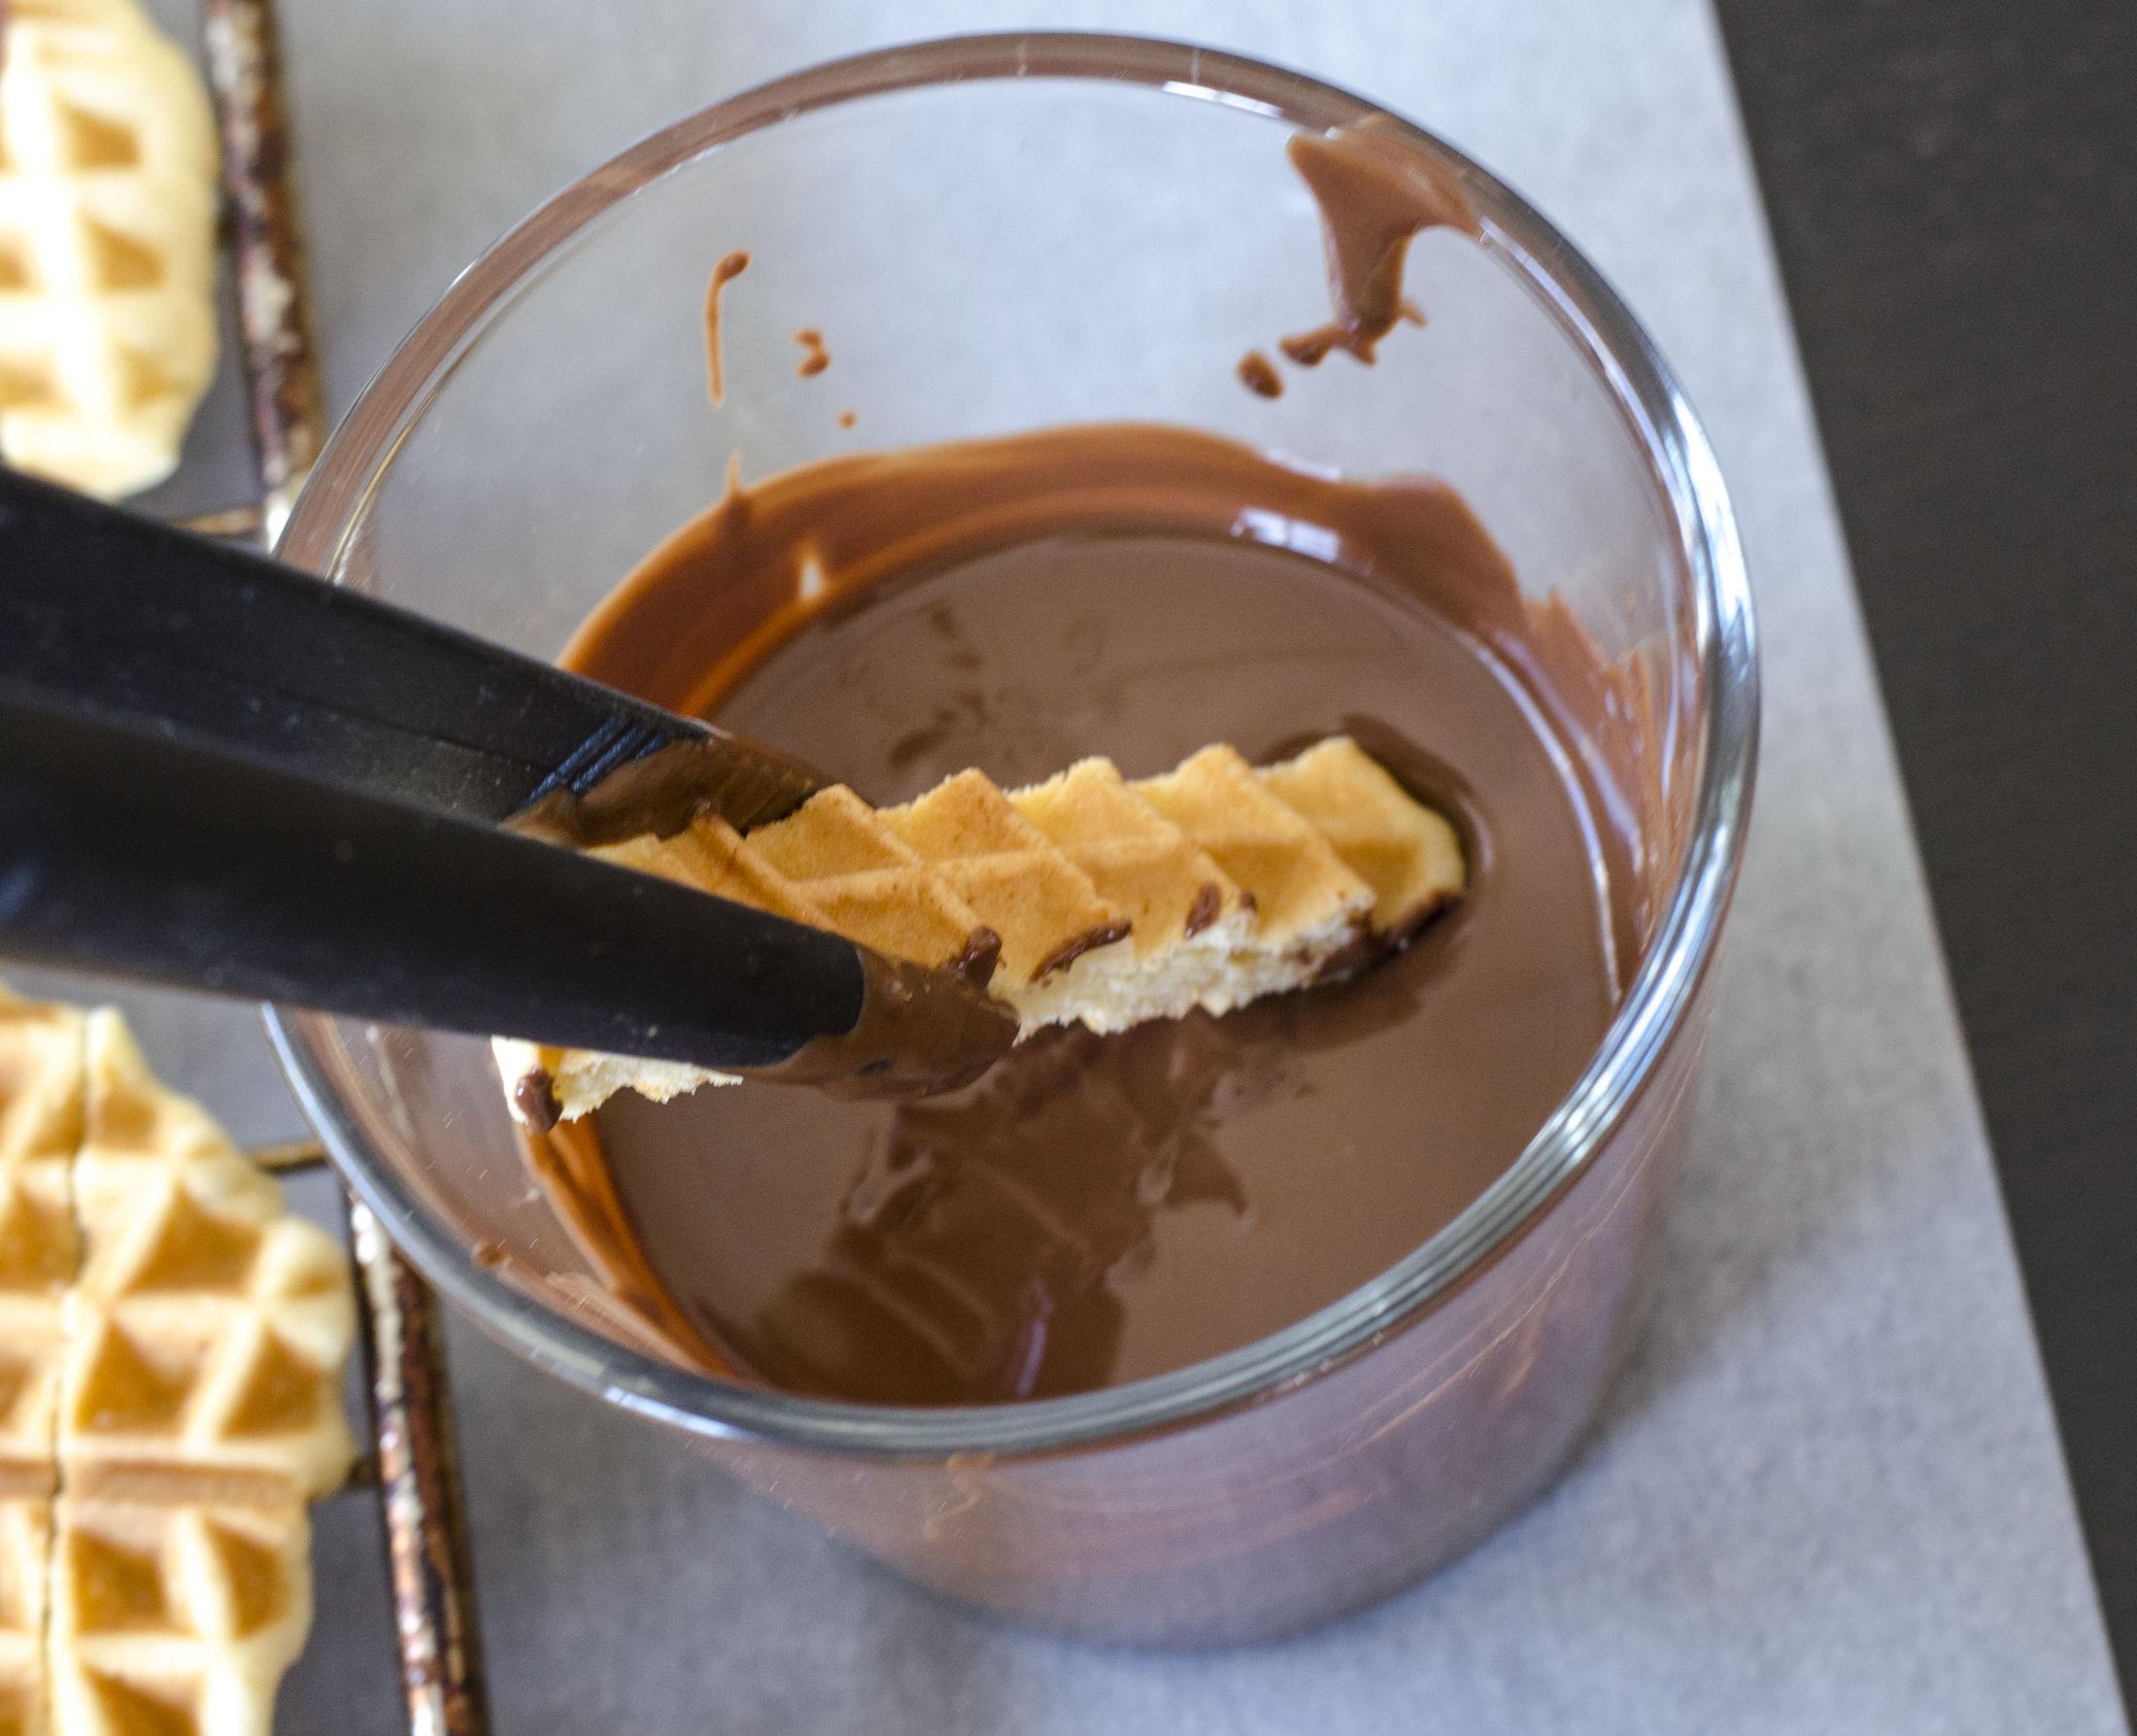 Smelt sjokoladen i mikrobølgeovn eller over vannbad og dypp stavene i sjokoladen. La sjokoladen stivne før de nytes.